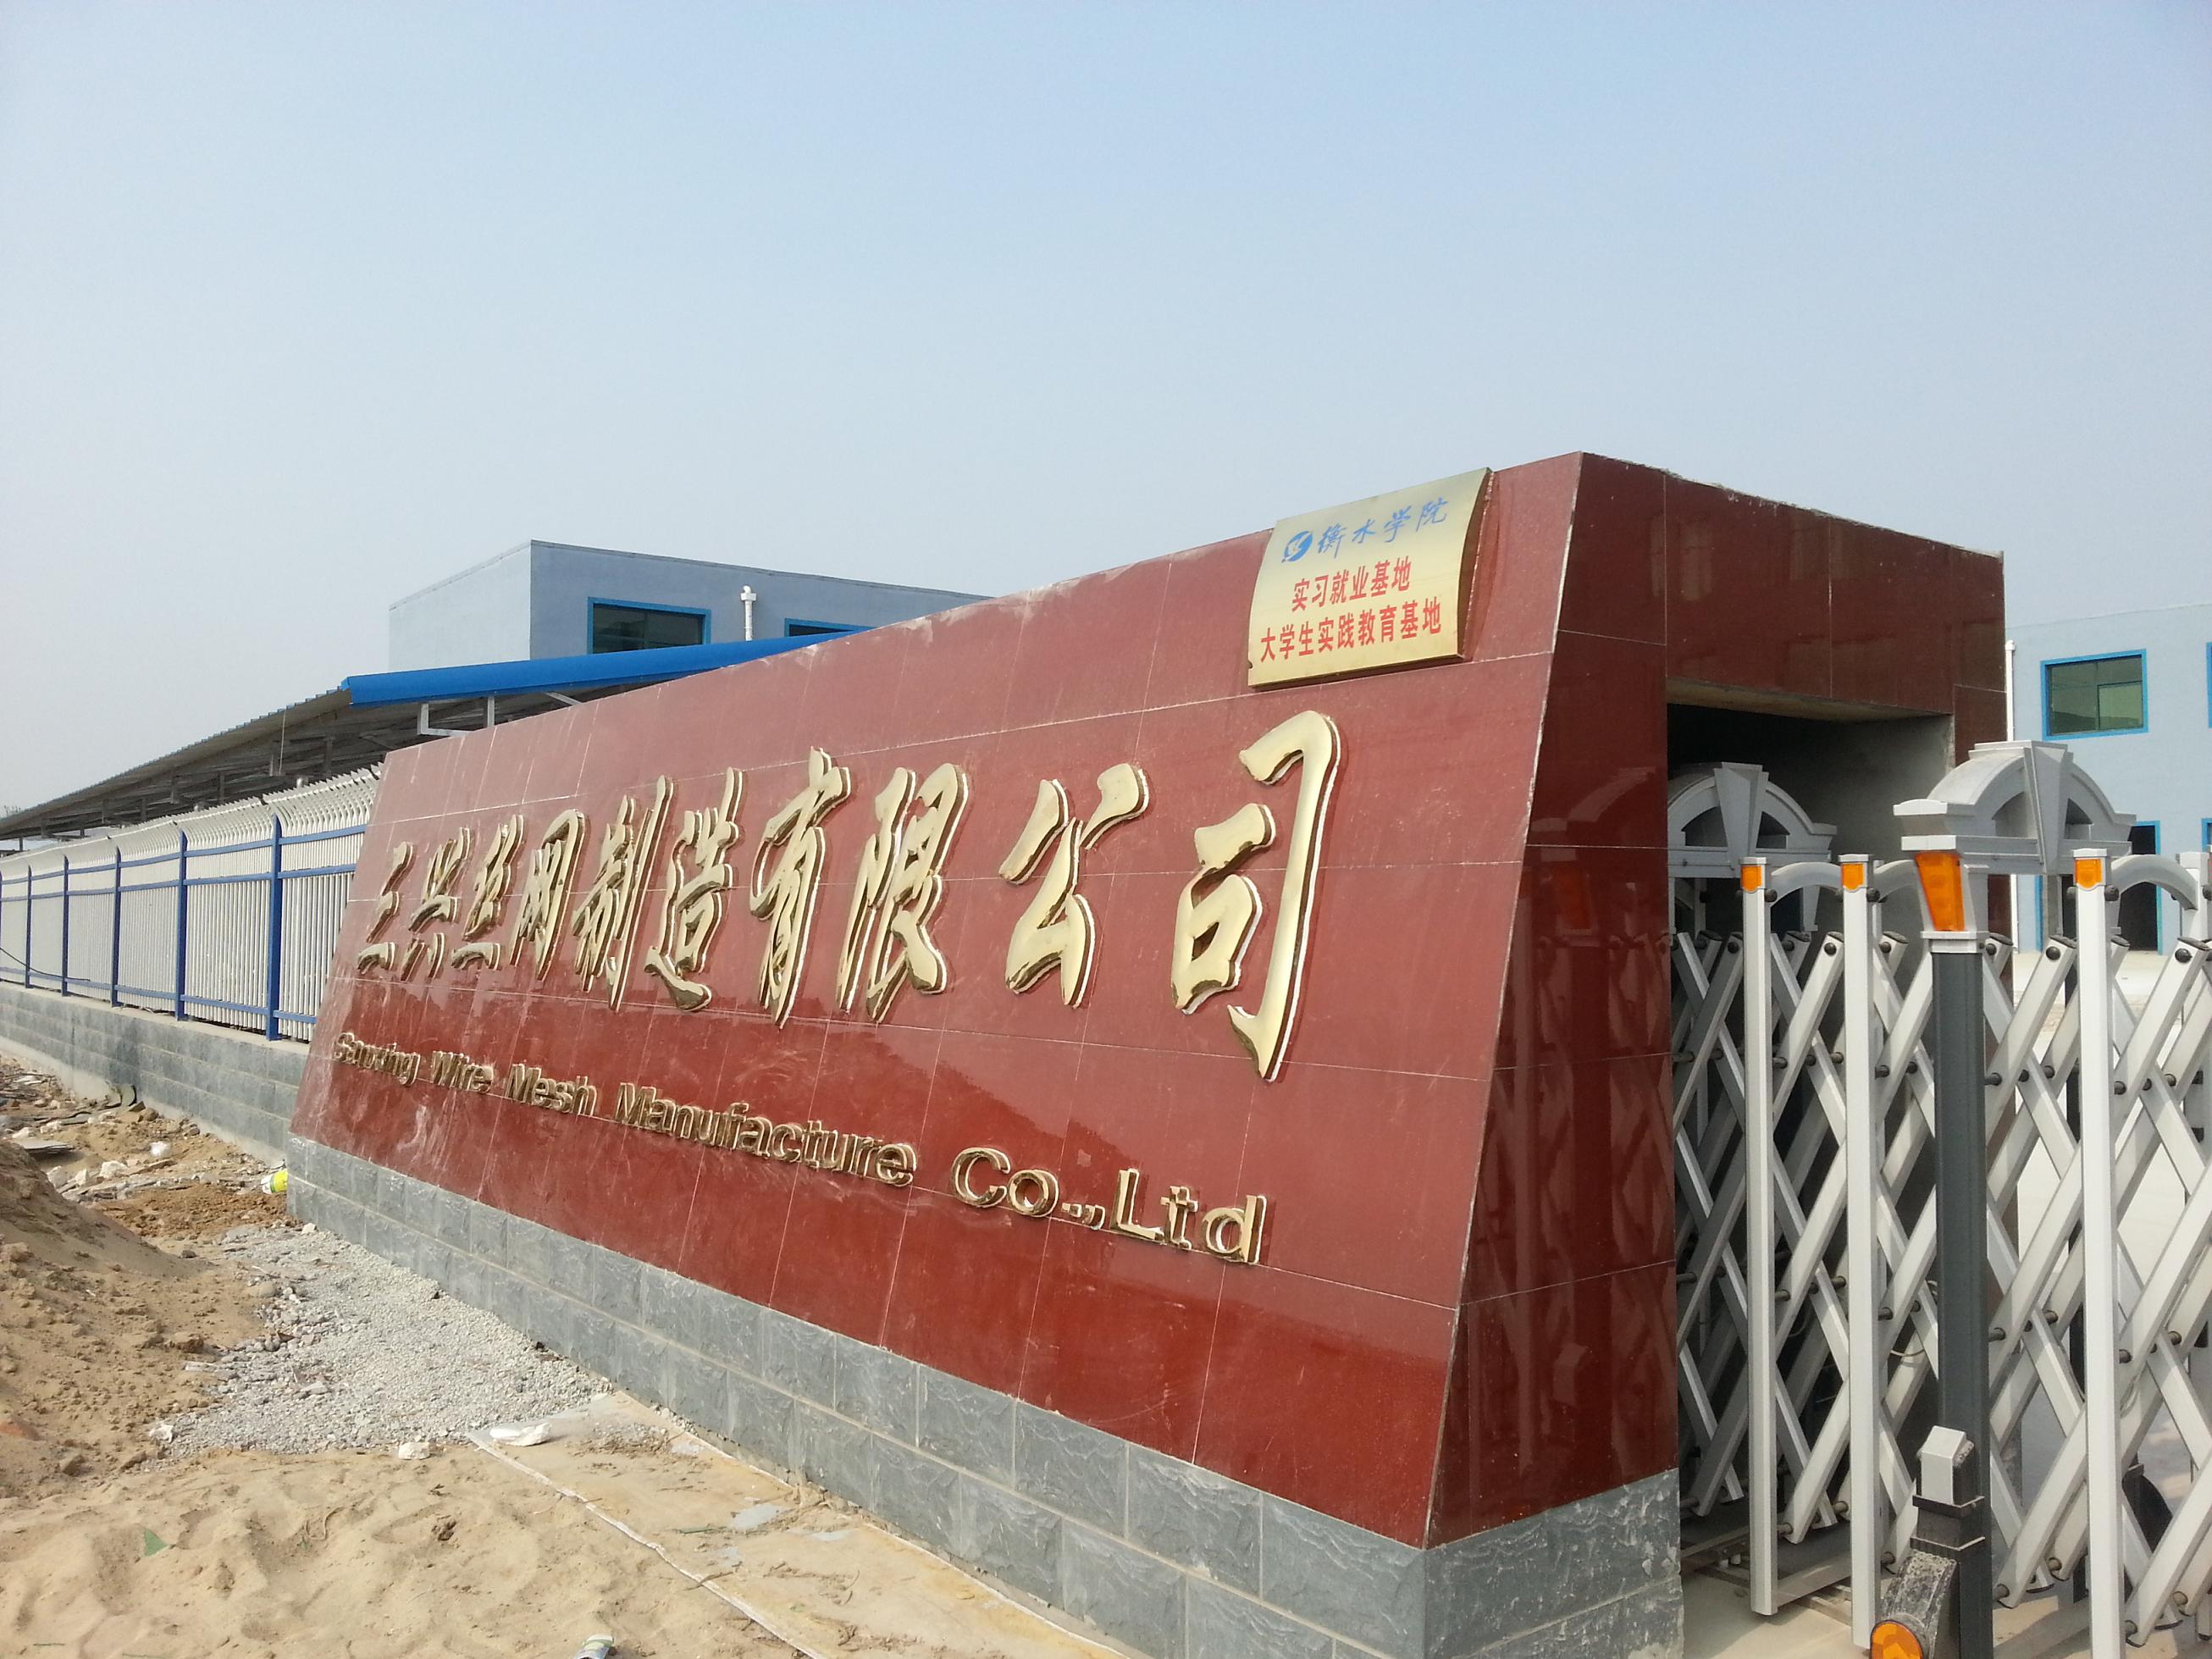 2022 // Sanxing // (ISO Fabrikası) // Çelik Takviye Mesh Panel Beton Sıvı Şeritli Tel Netting